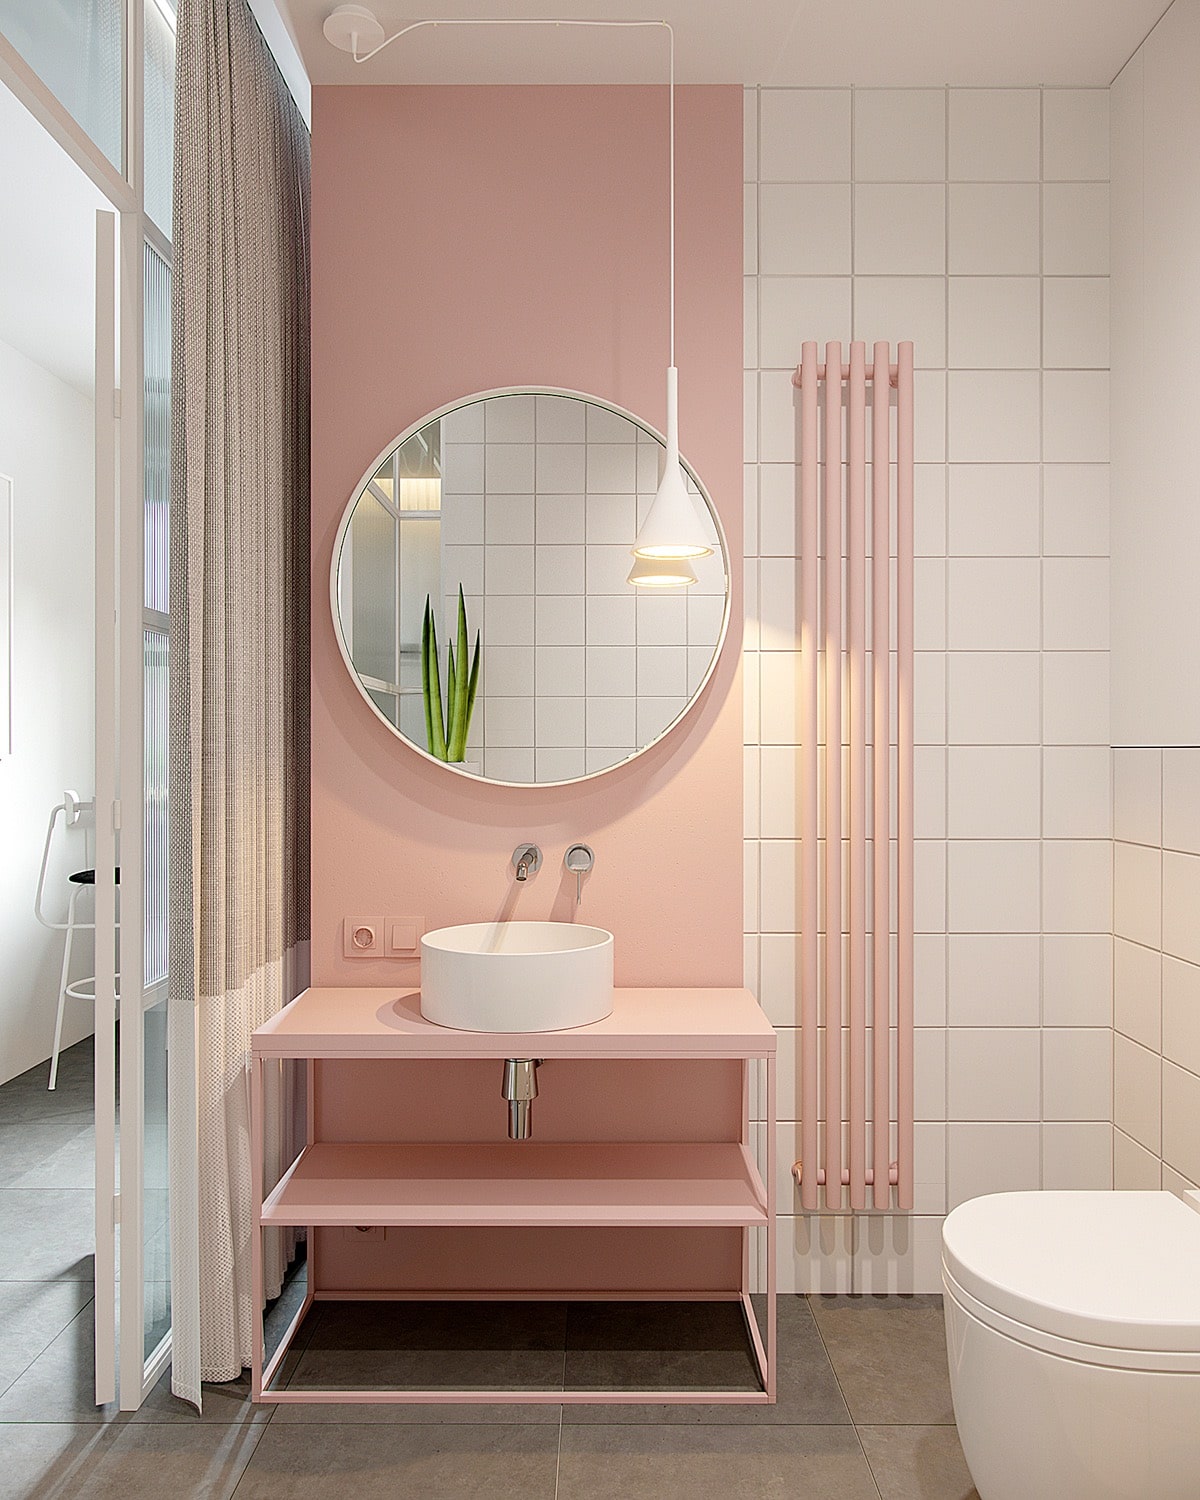 Thiết kế phòng tắm với tone hồng